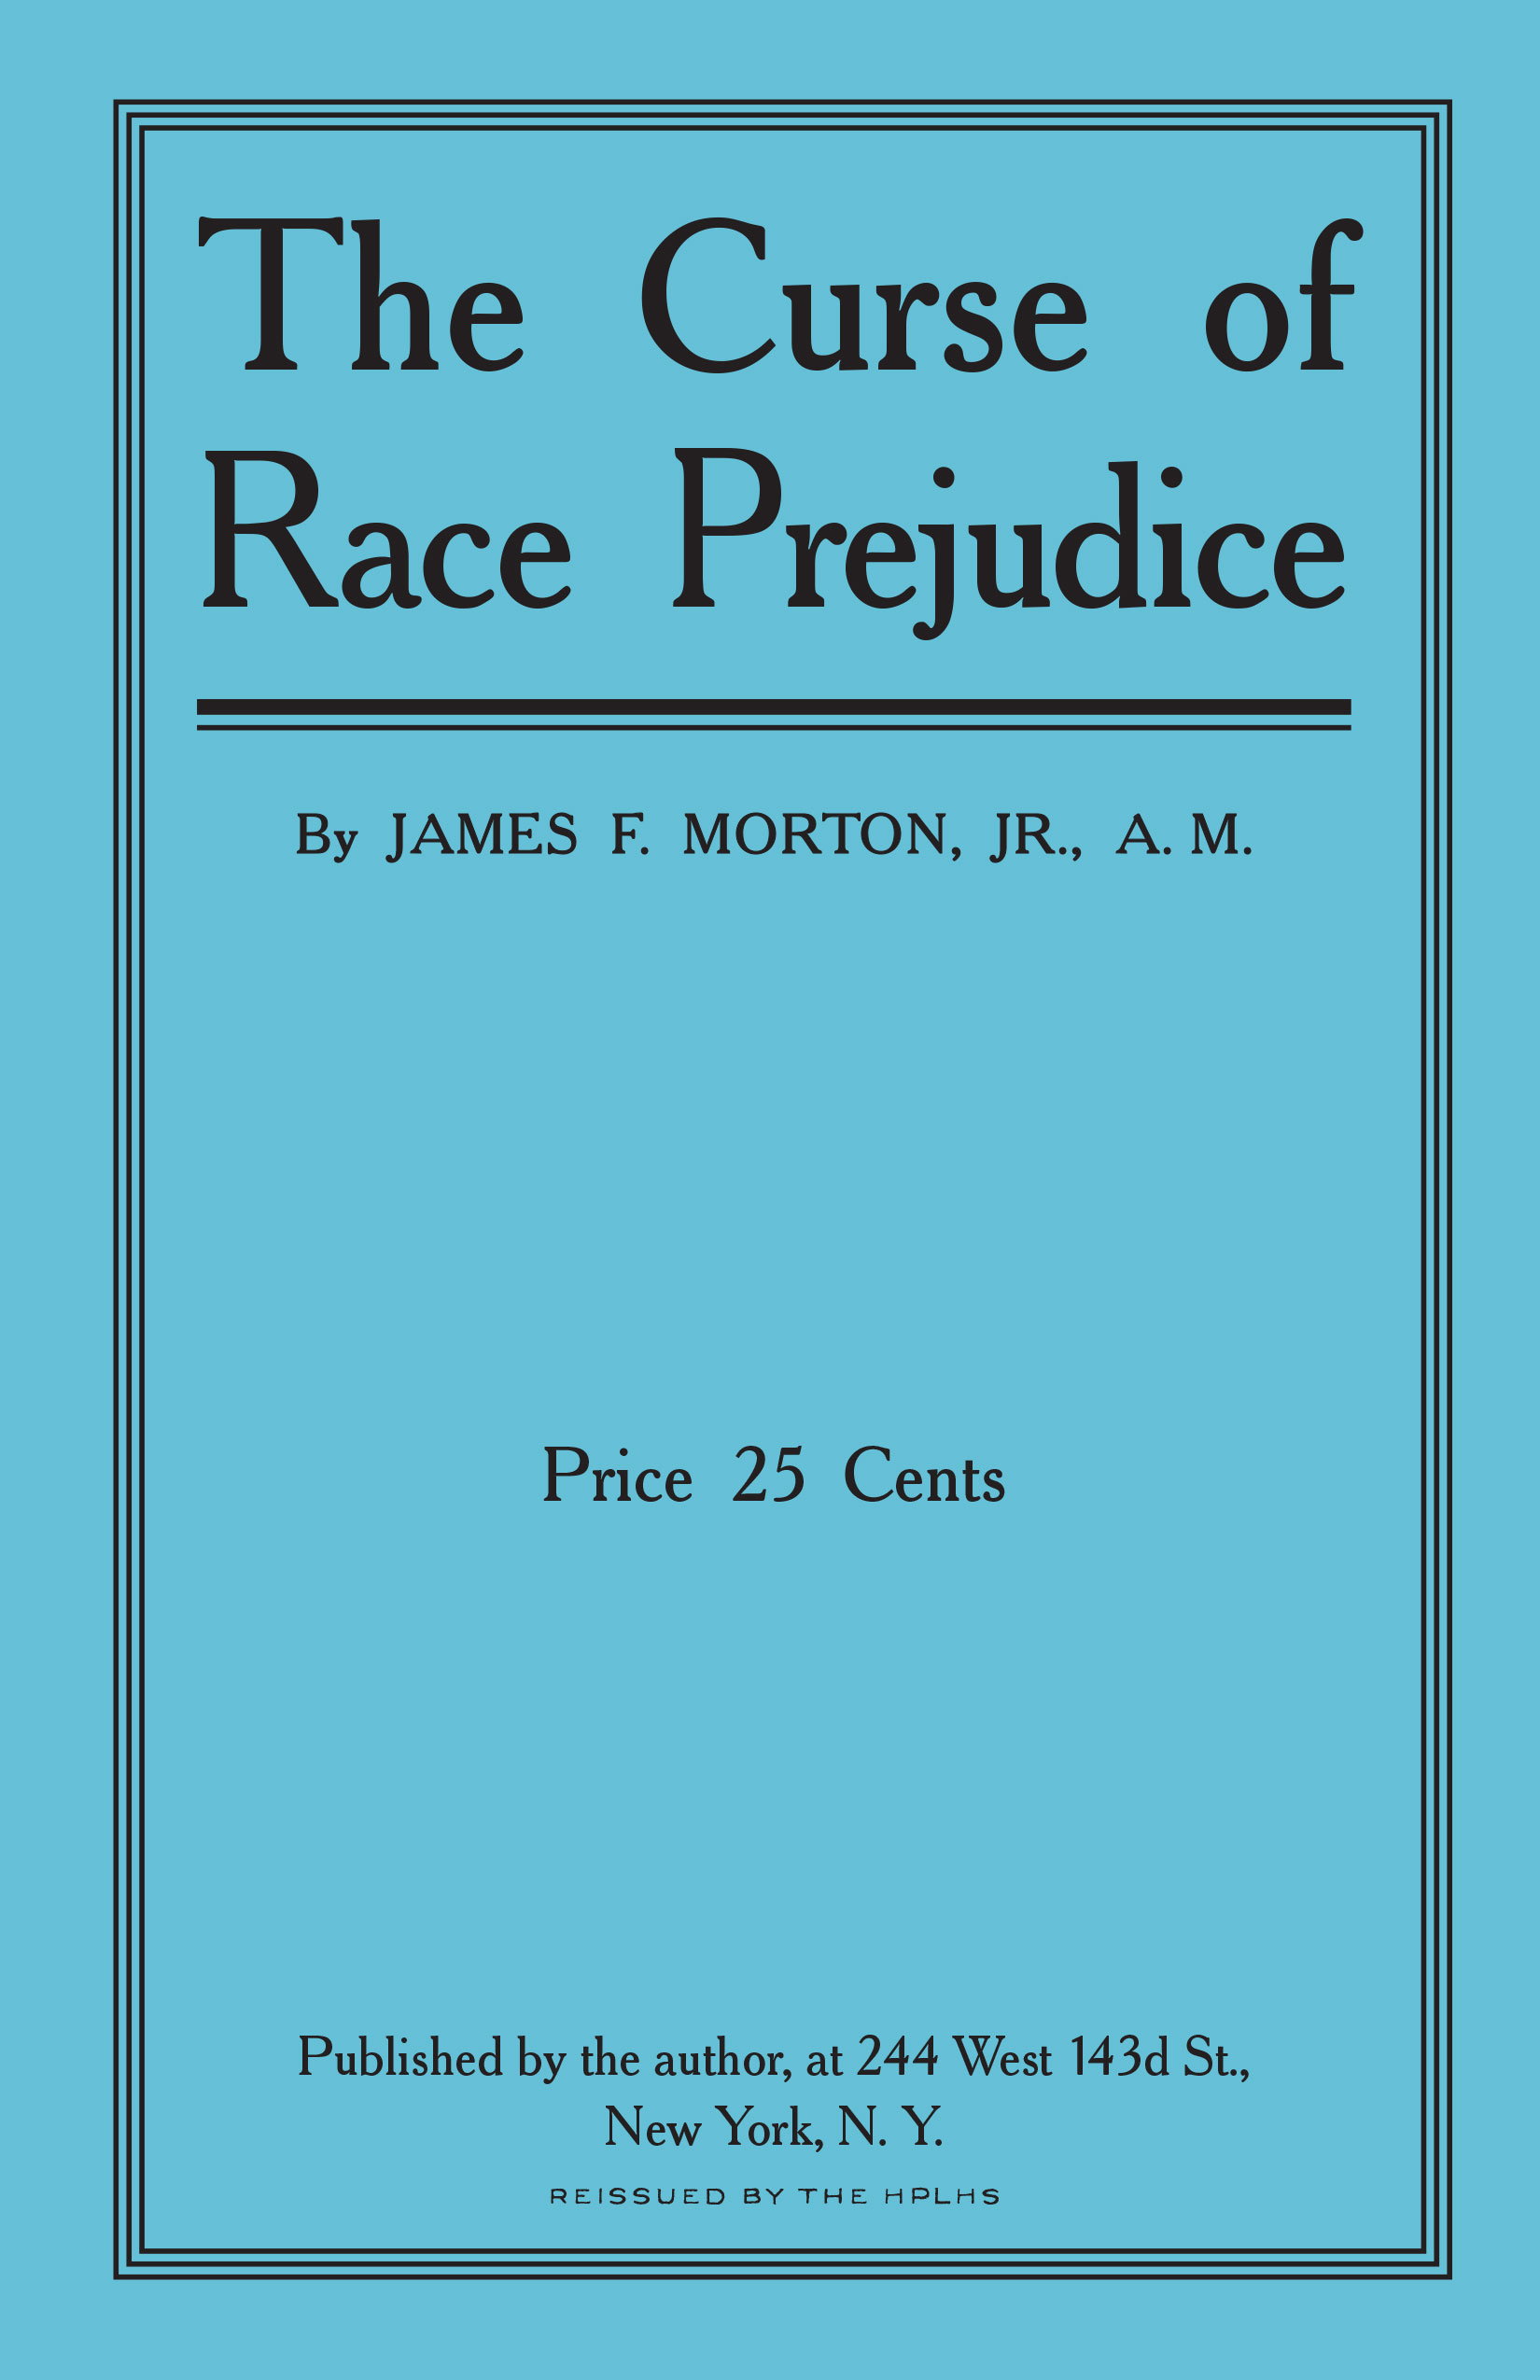 The Curse of Race Prejudice cover